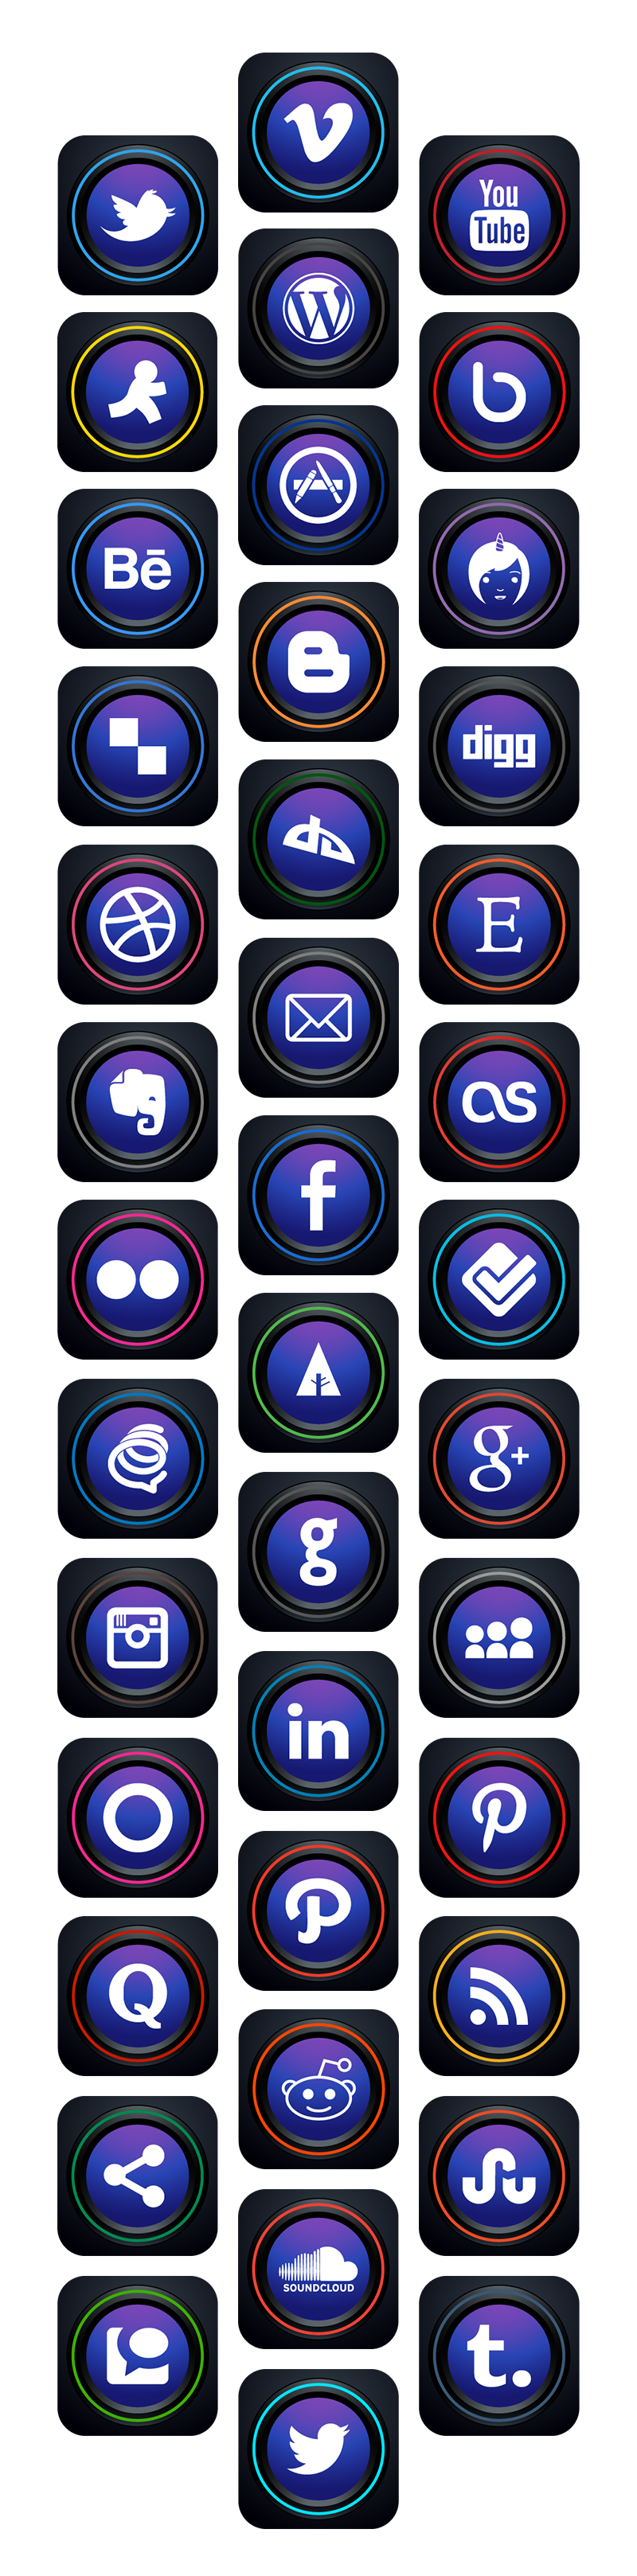 icons-2